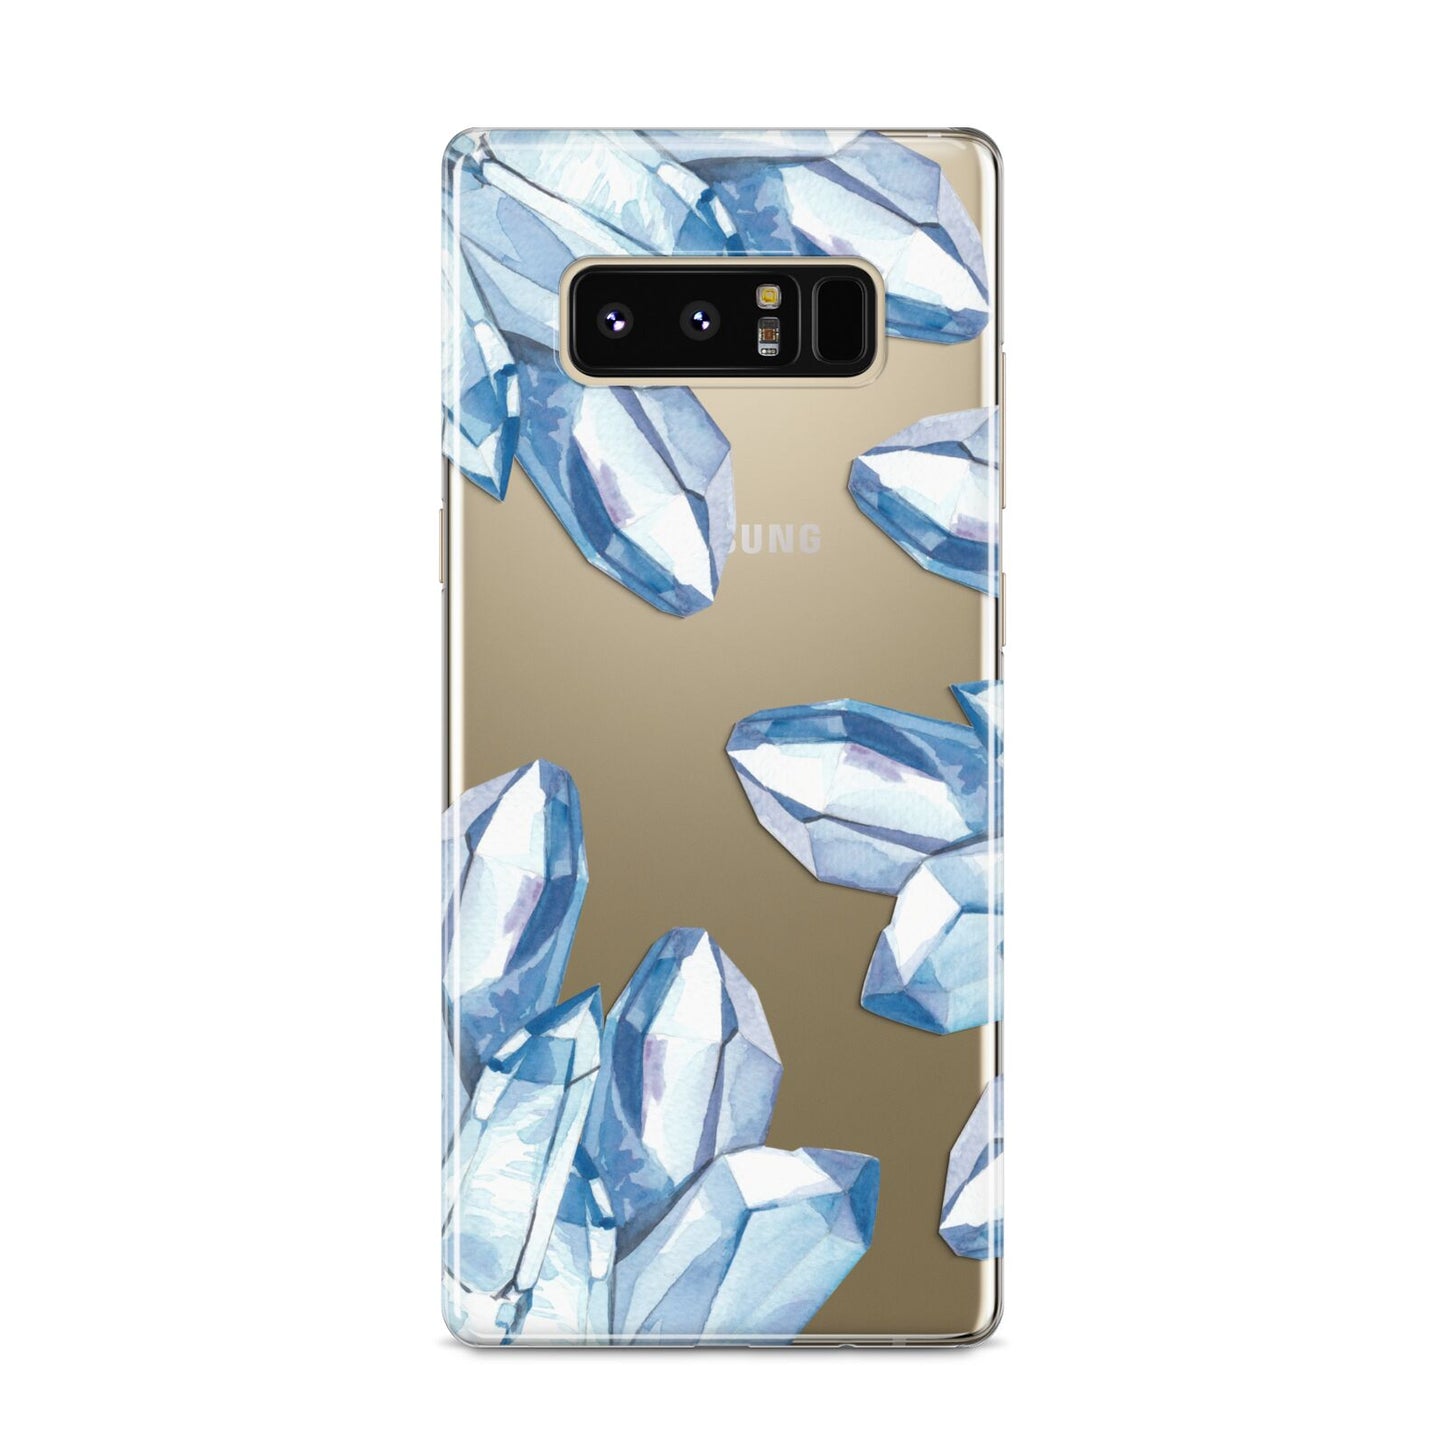 Blue Crystals Samsung Galaxy S8 Case